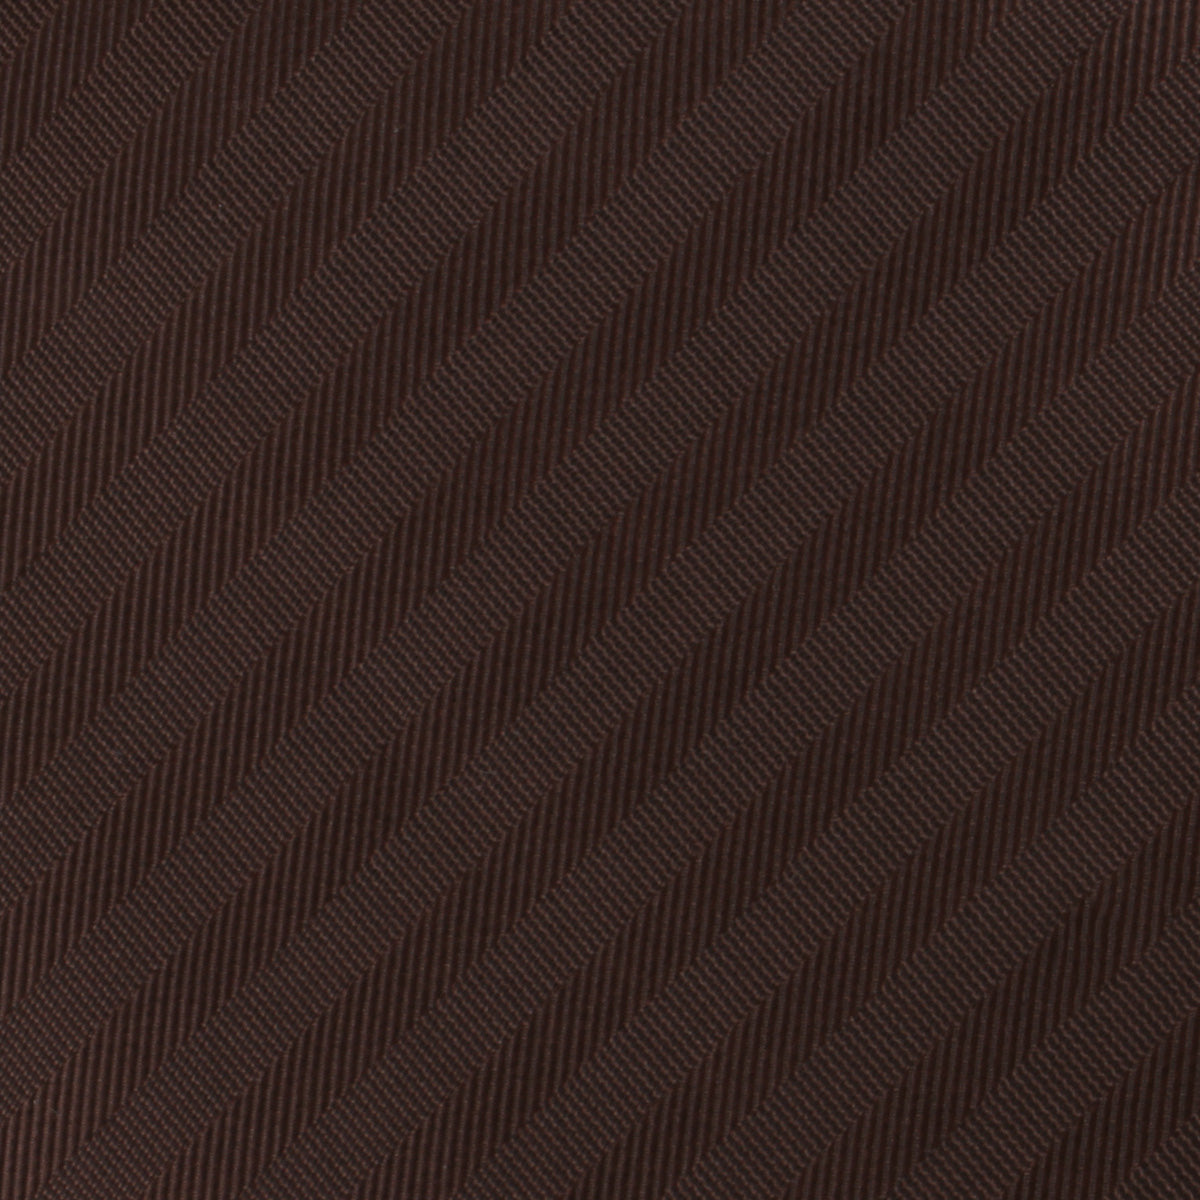 Cinnamon Brown Striped Necktie Fabric